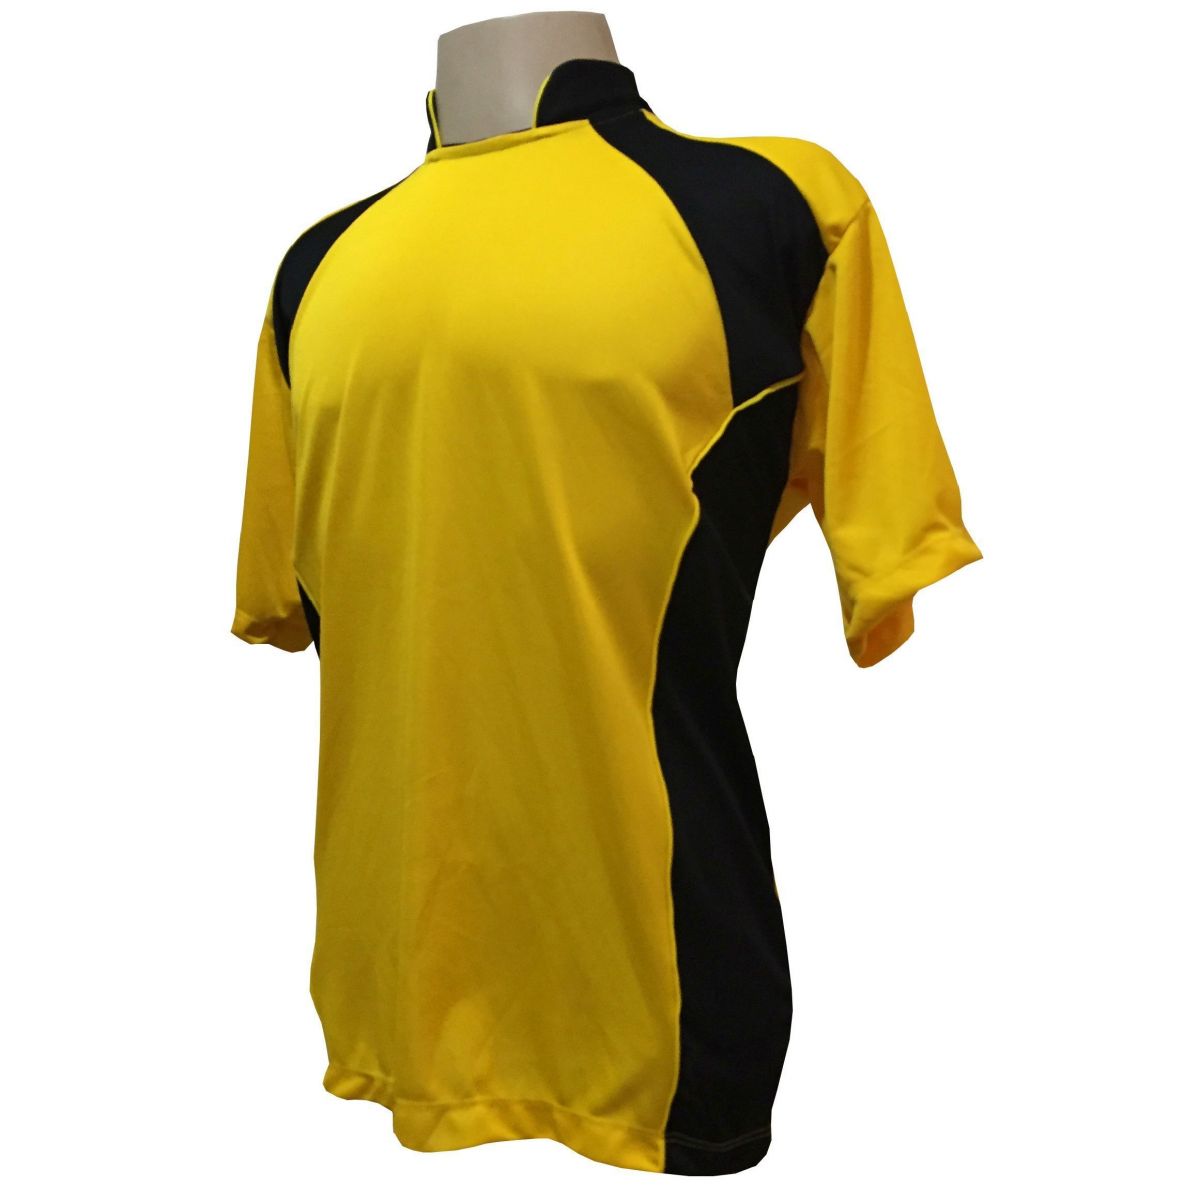 Uniforme Esportivo com 14 camisas modelo Suécia Amarelo/Preto + 14 calções modelo Copa Preto/Amarelo + Brindes